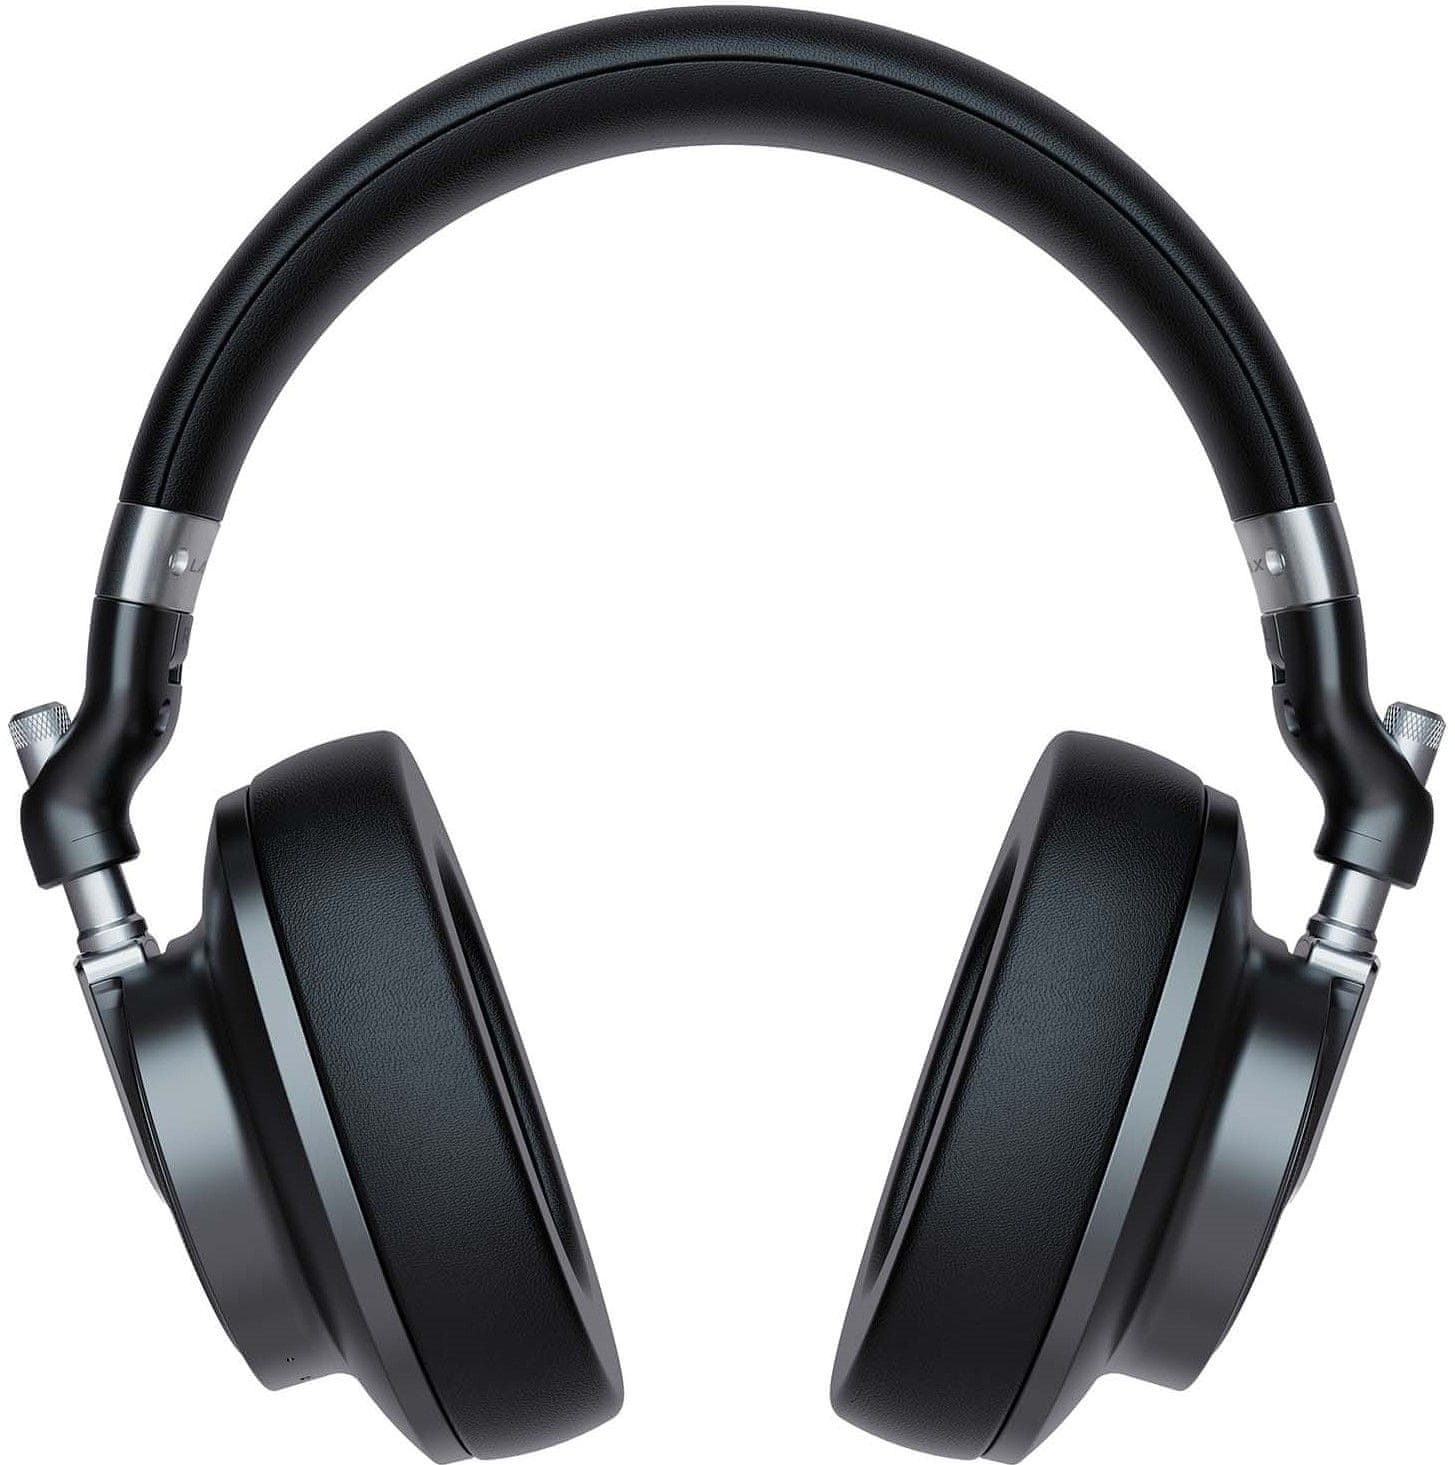  moderní sluchátka náhlavní bluetooth lamax highcomfort anc usbc nabíjení baterie s výdrží až 50 h rychlonabíjecí funkce pohodlná na uších handsfree mikrofon 